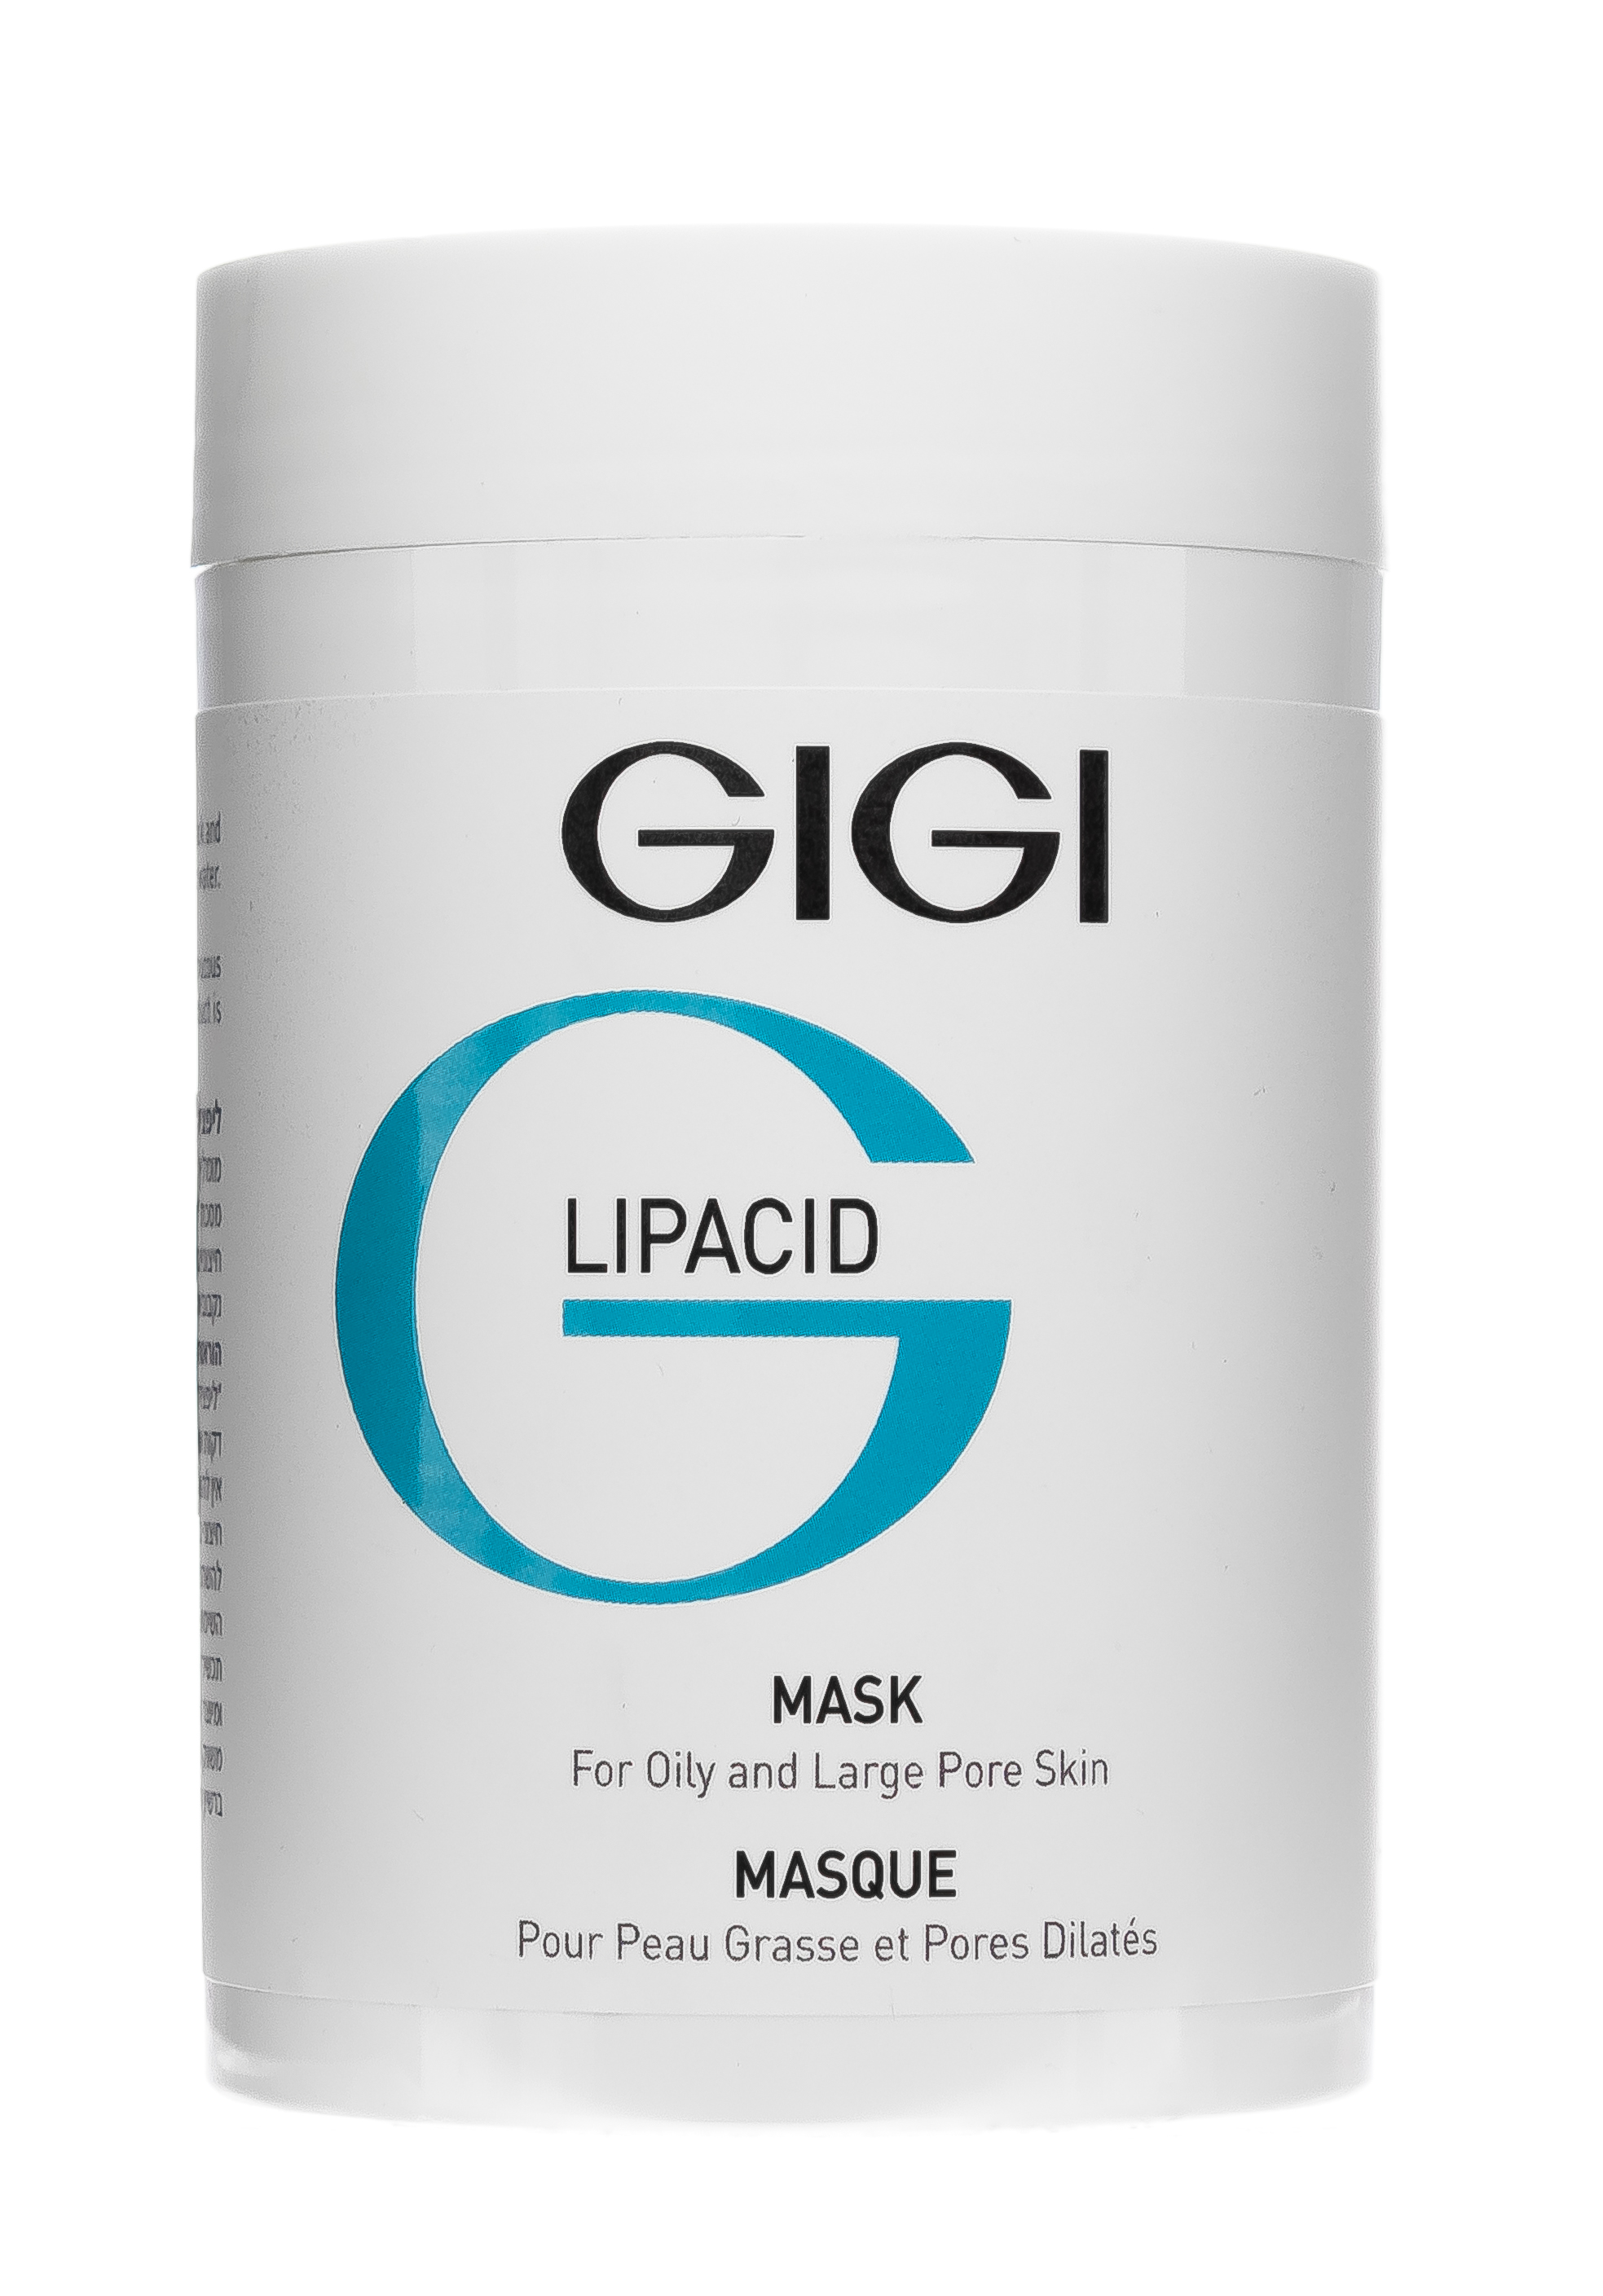 Маска полезная косметика отзывы. Gigi лечебная маска Lipacid Mask. Gigi Lipacid крем. Gigi Lipacid порошковая маска 250 мл. Крем для лица Lipacid Moisturizer.